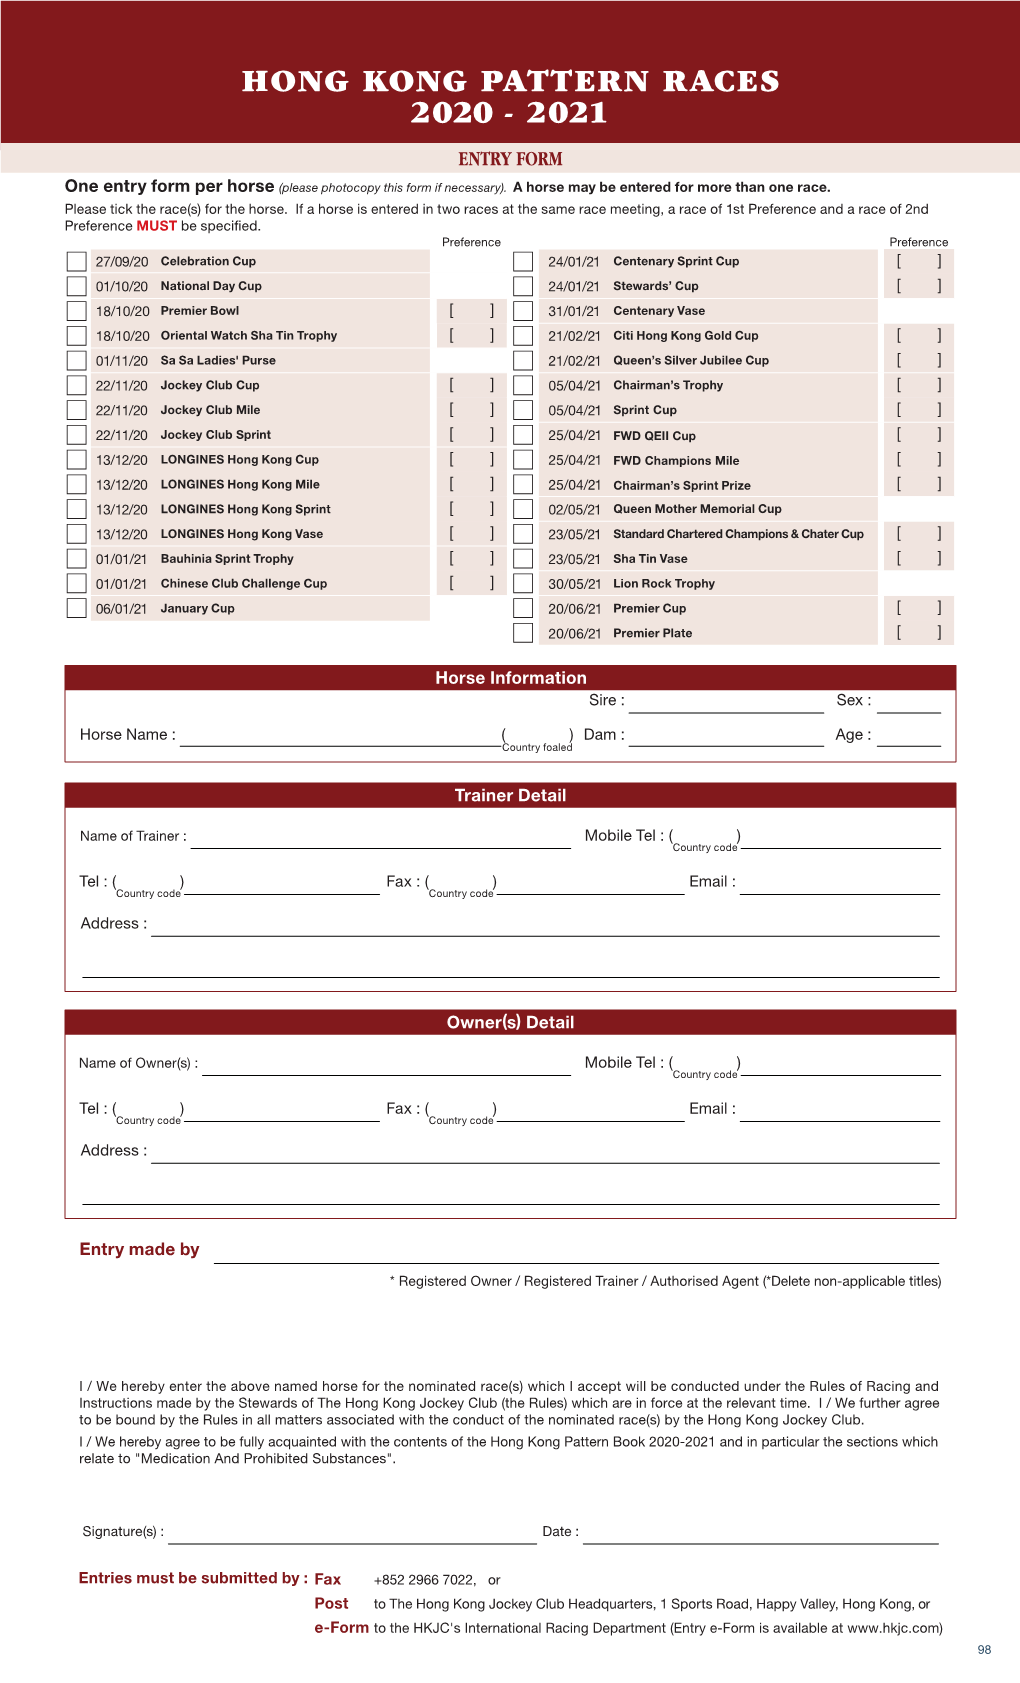 Entry Form(75KB)